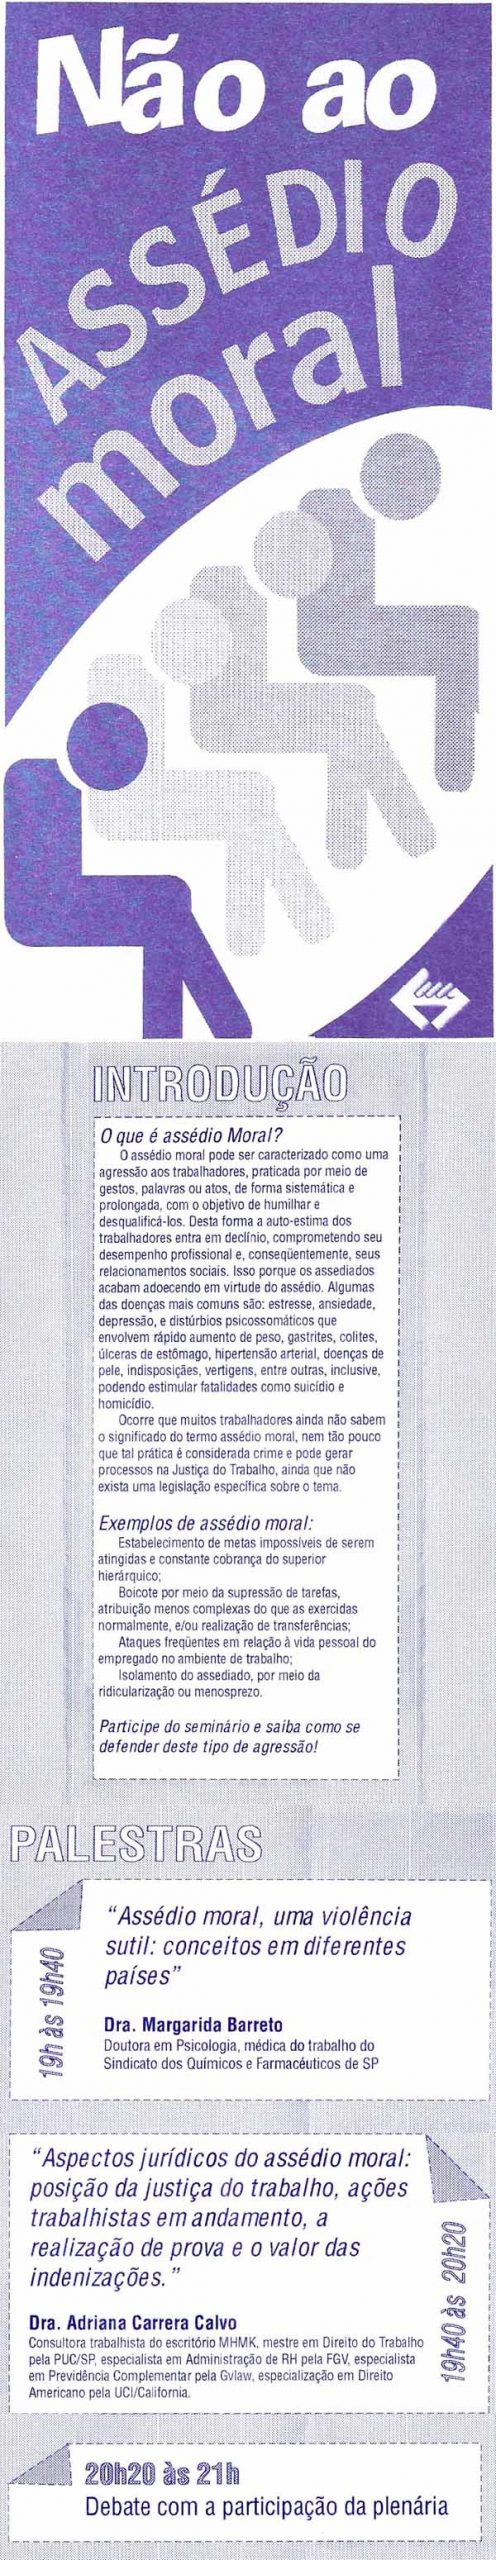 2005_II_Seminario_sobre_Assedio_Moral_Sindicato_Metroviarios.jpg